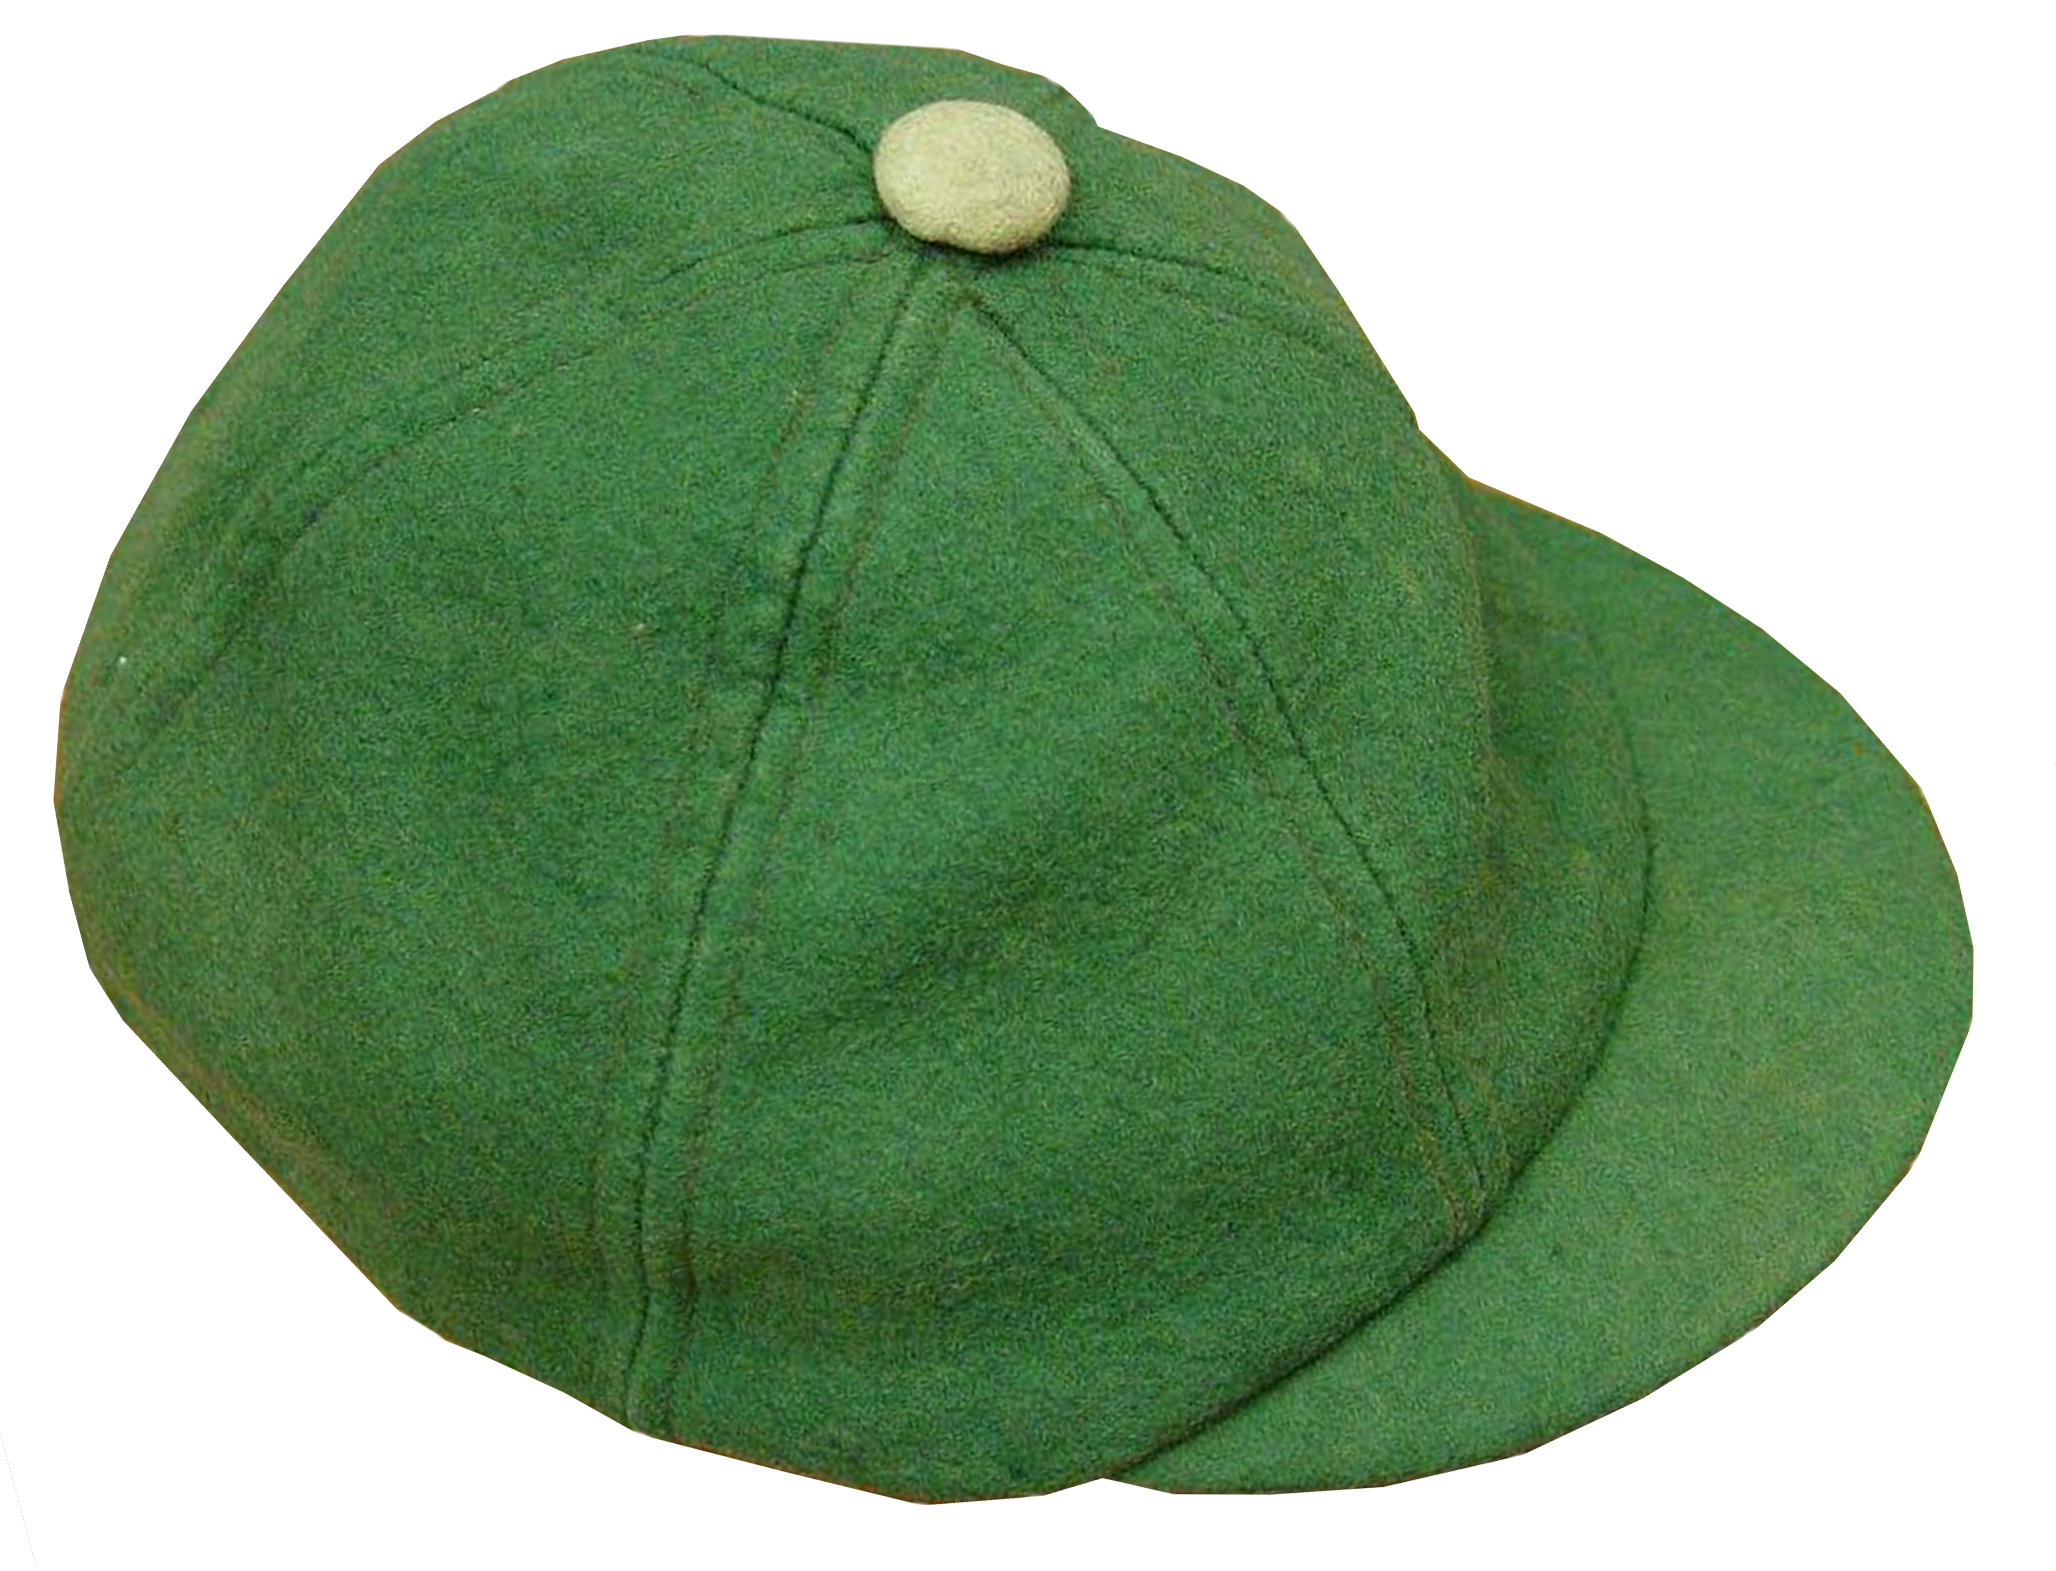 An Example Cap